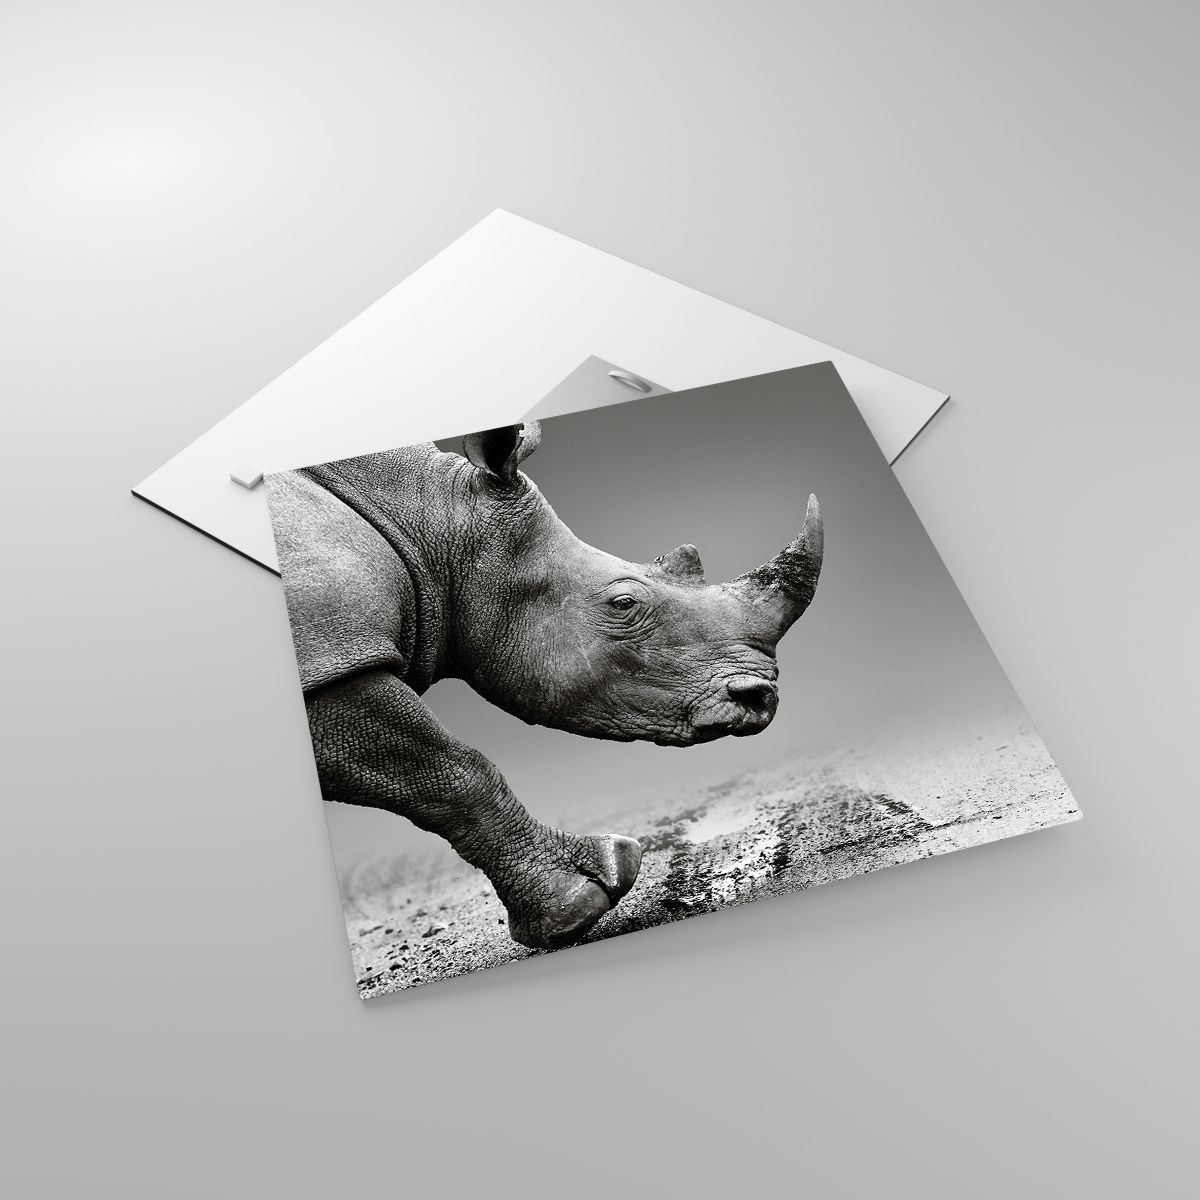 Glasbild Nashorn, Glasbild Tiere, Glasbild Afrika, Glasbild Natur, Glasbild Schwarz Und Weiß